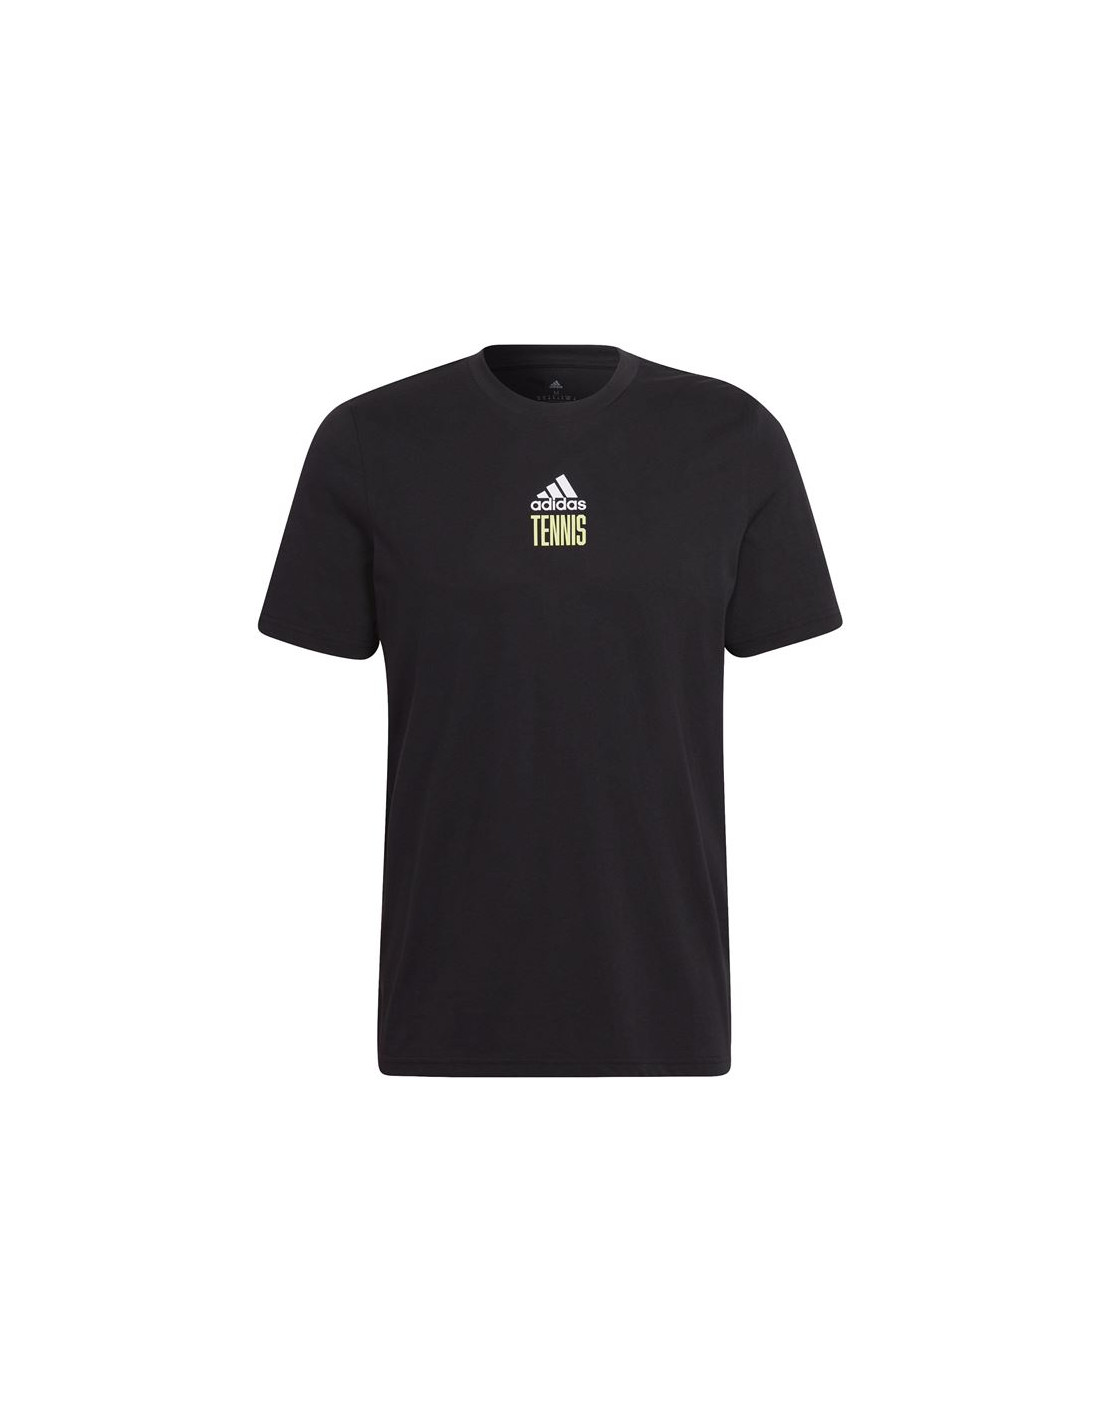 Camiseta de tenis adidas aeroready paris graphic black m